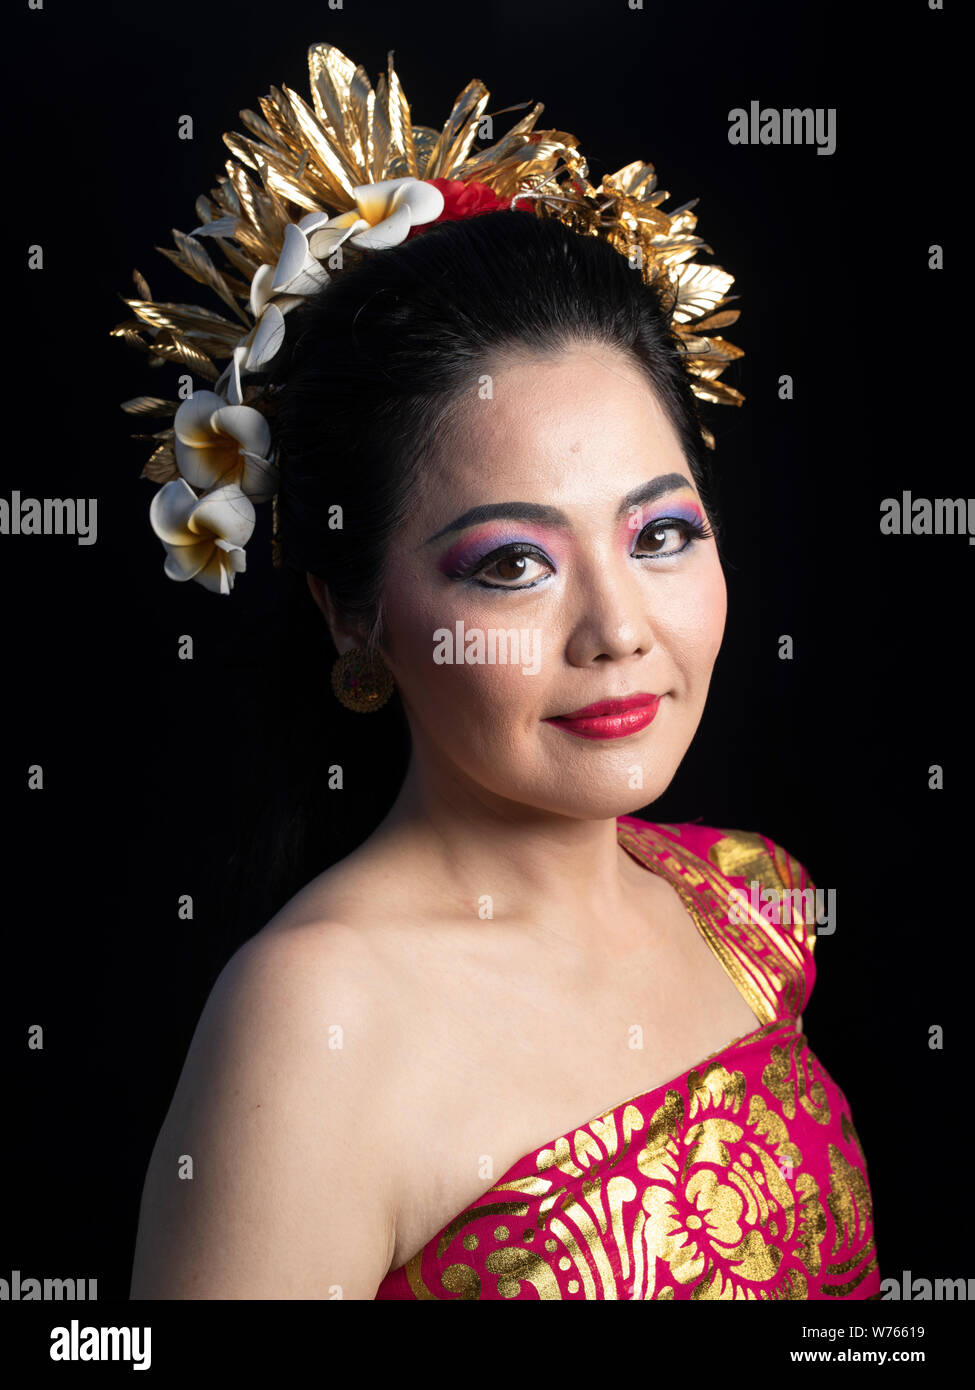 Portrait de danse balinaise et gamelan membre du groupe. La danse et la musique traditionnelles de Bali, Indonésie, Asie du Sud-Est, y compris Legong Barong Danse de bienvenue Banque D'Images